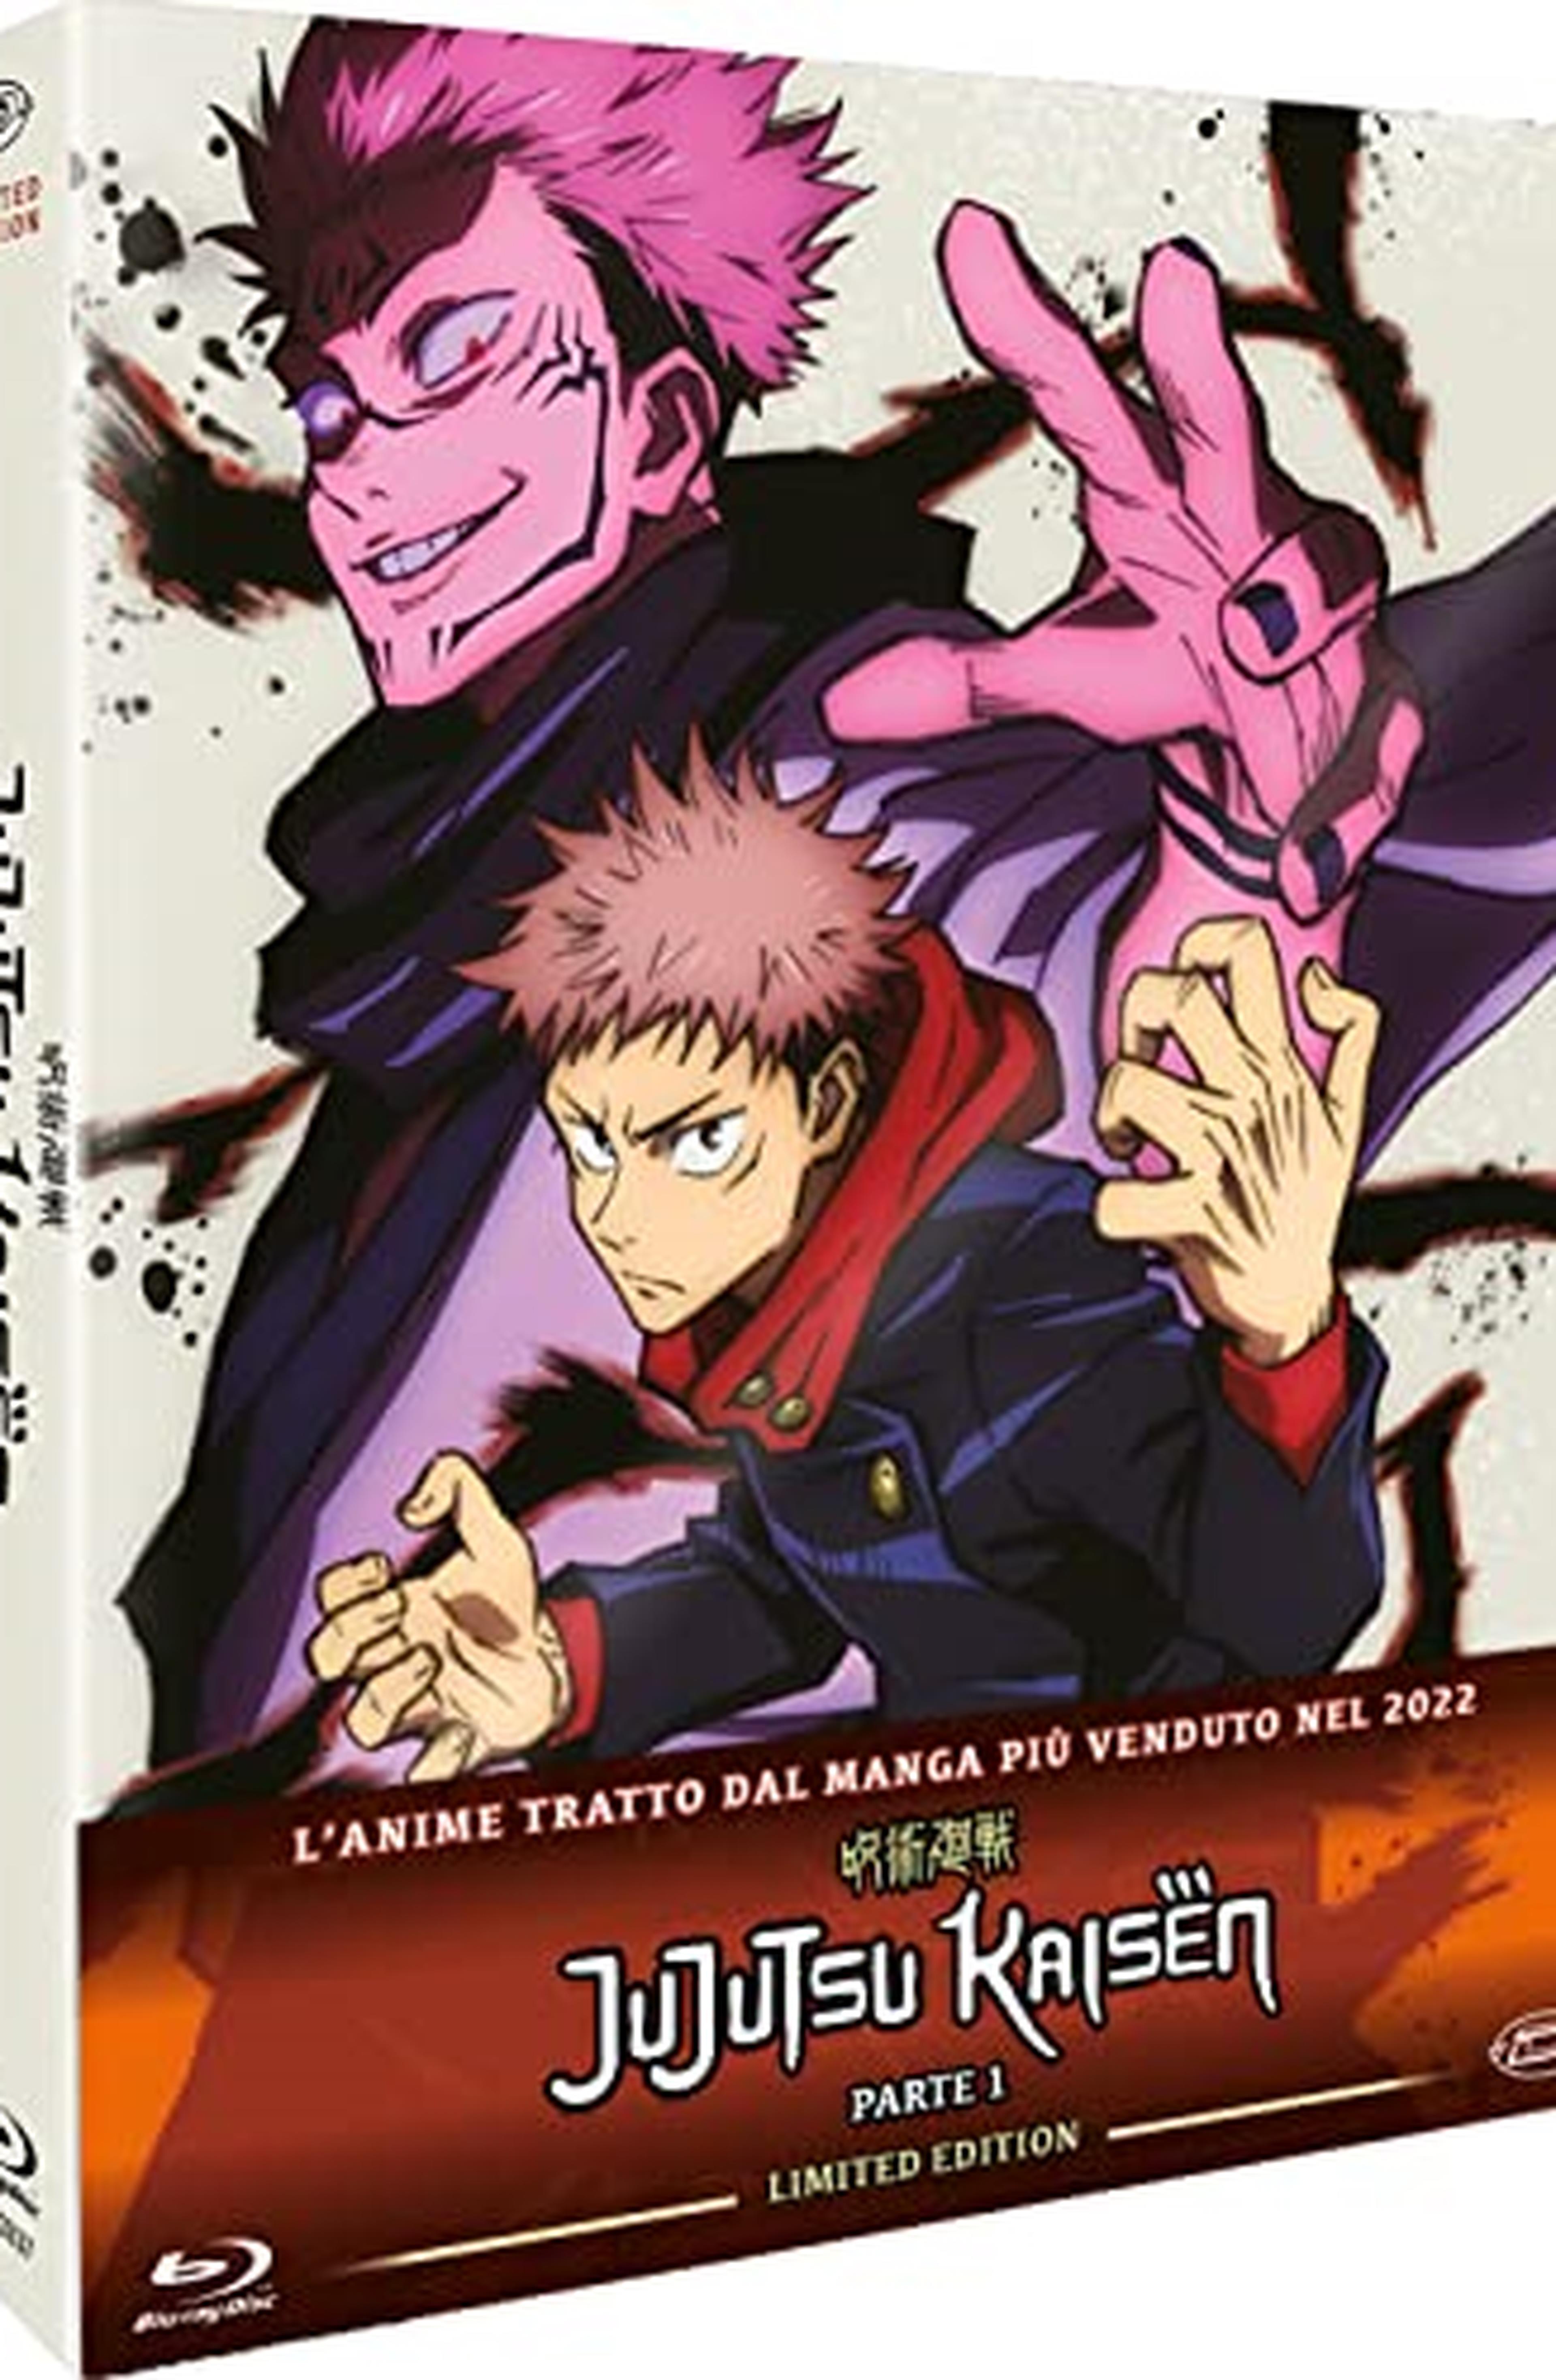 Jujutsu Kaisen, Limited Edition Box-Set #01, Eps 01 - 13, 3 Blu-ray